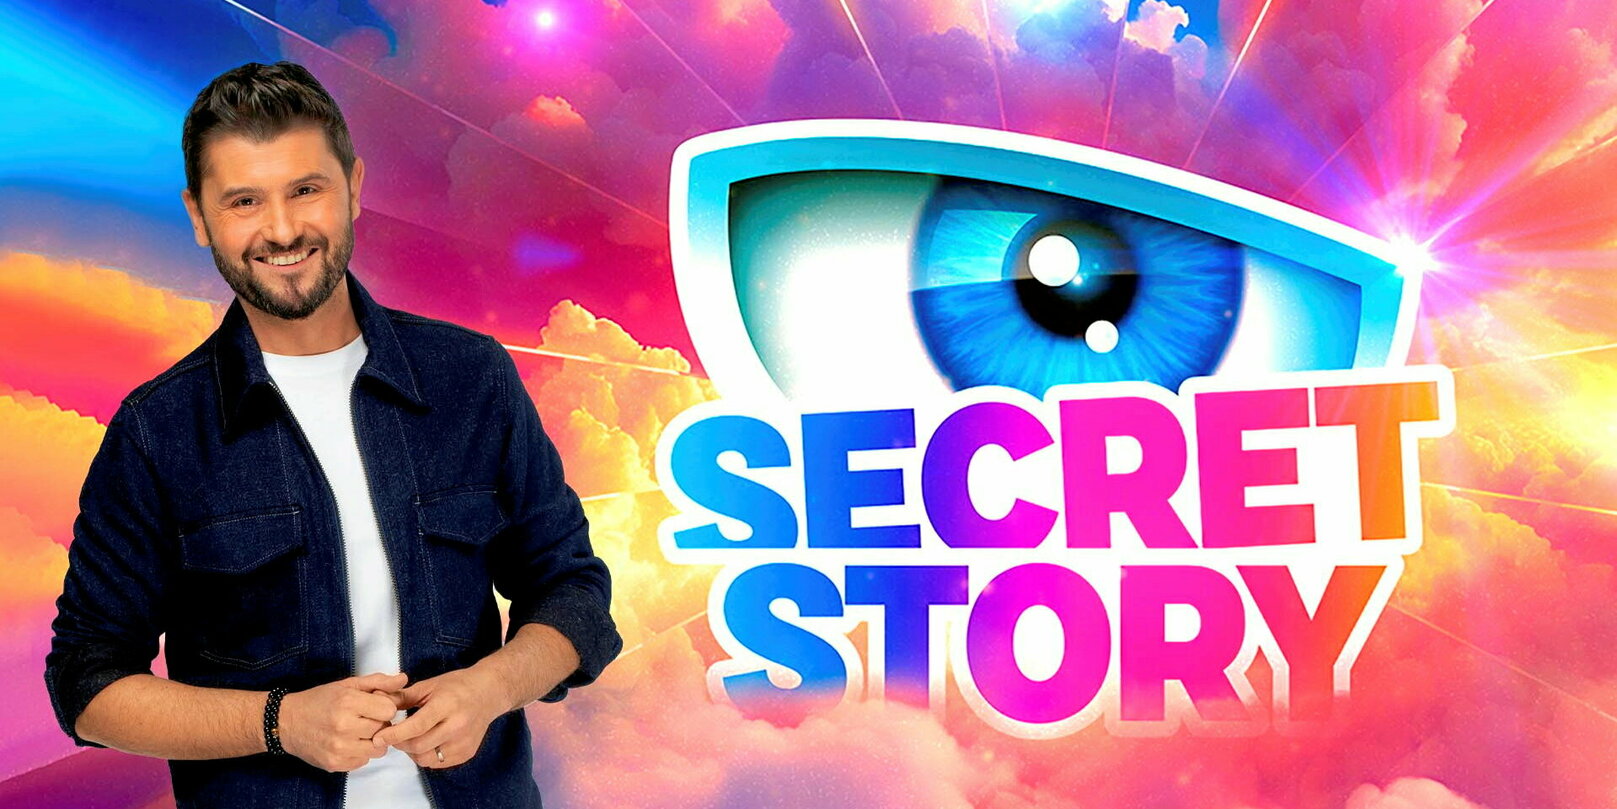 Secret Story : Christophe Beaugrand exprime des doutes sur une nouvelle Saison